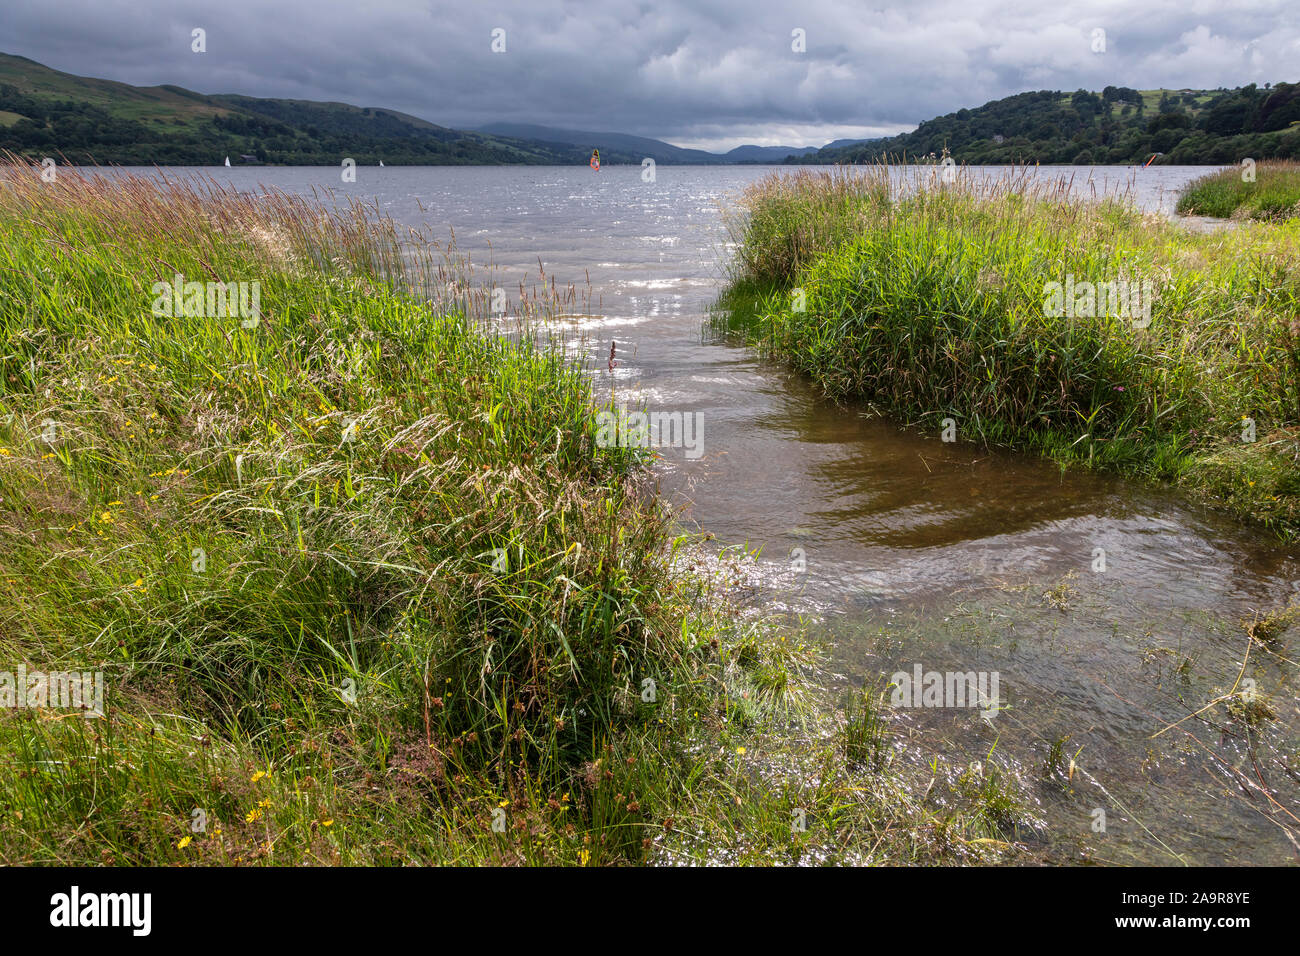 Llyn Tegid (Lake Bala), Gwynedd, Wales Stock Photo